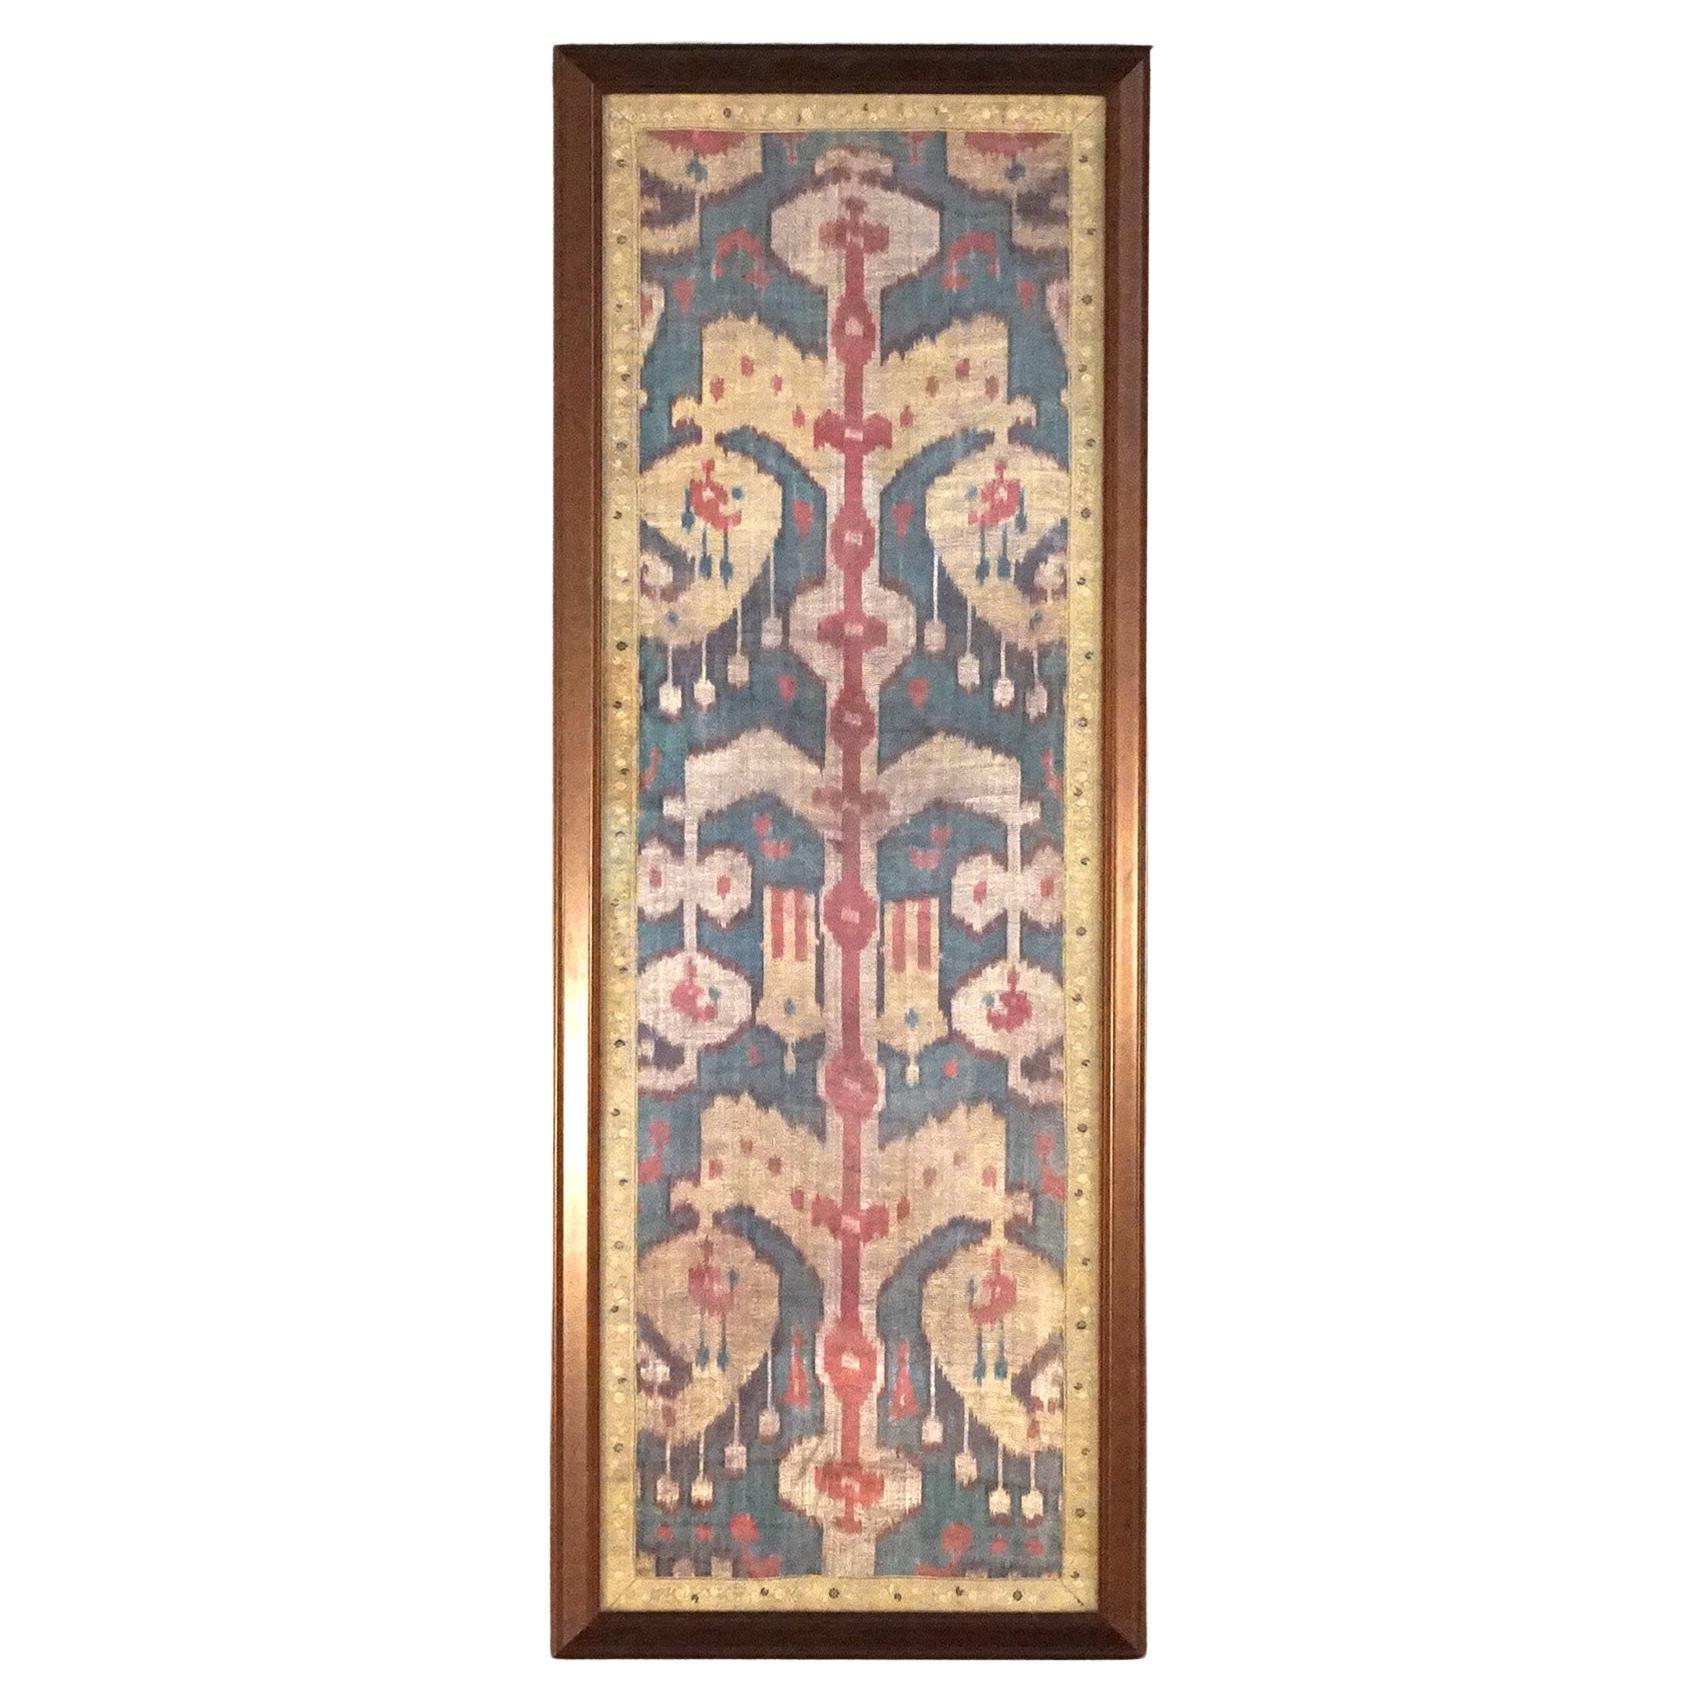 Fragment de tapis à l'aiguille turc encadré, XVIIIe siècle